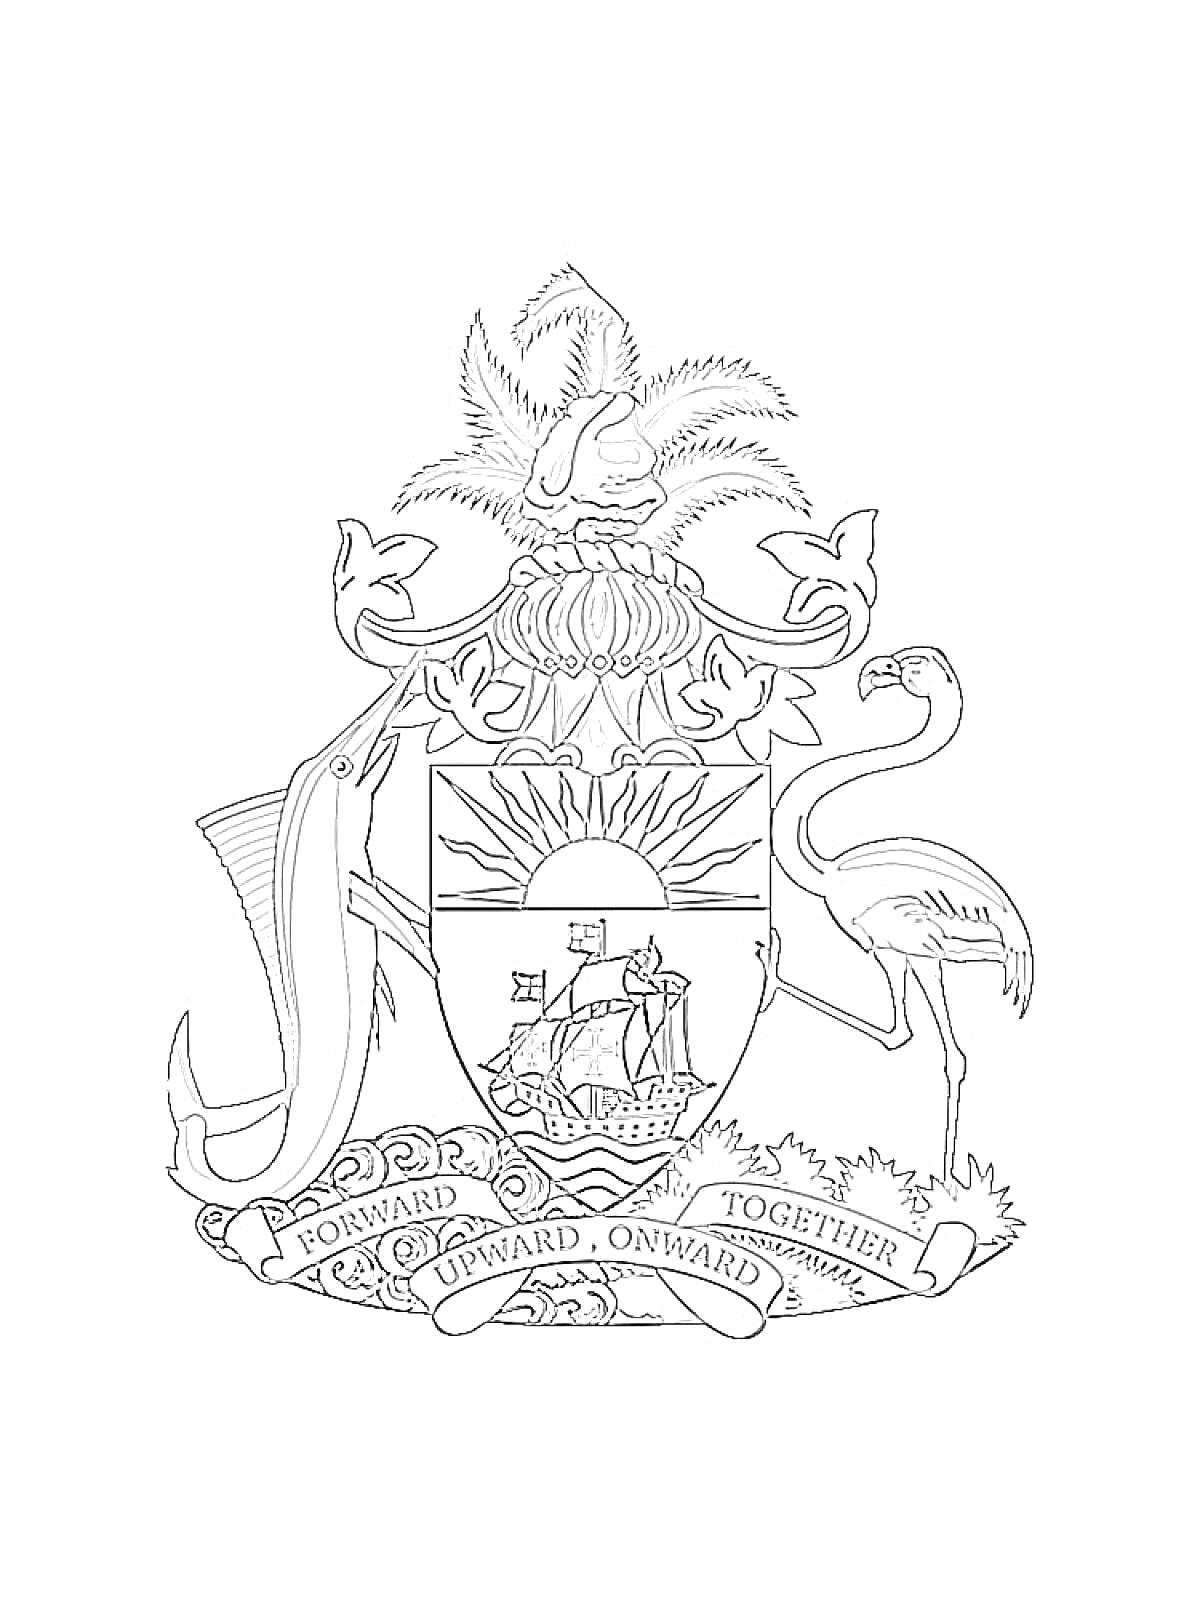 Герб с центральным щитом, изображающим корабль под солнцем, поддерживаемым меч-рыбой и фламинго, на вершине пальма, снизу лента с надписью 